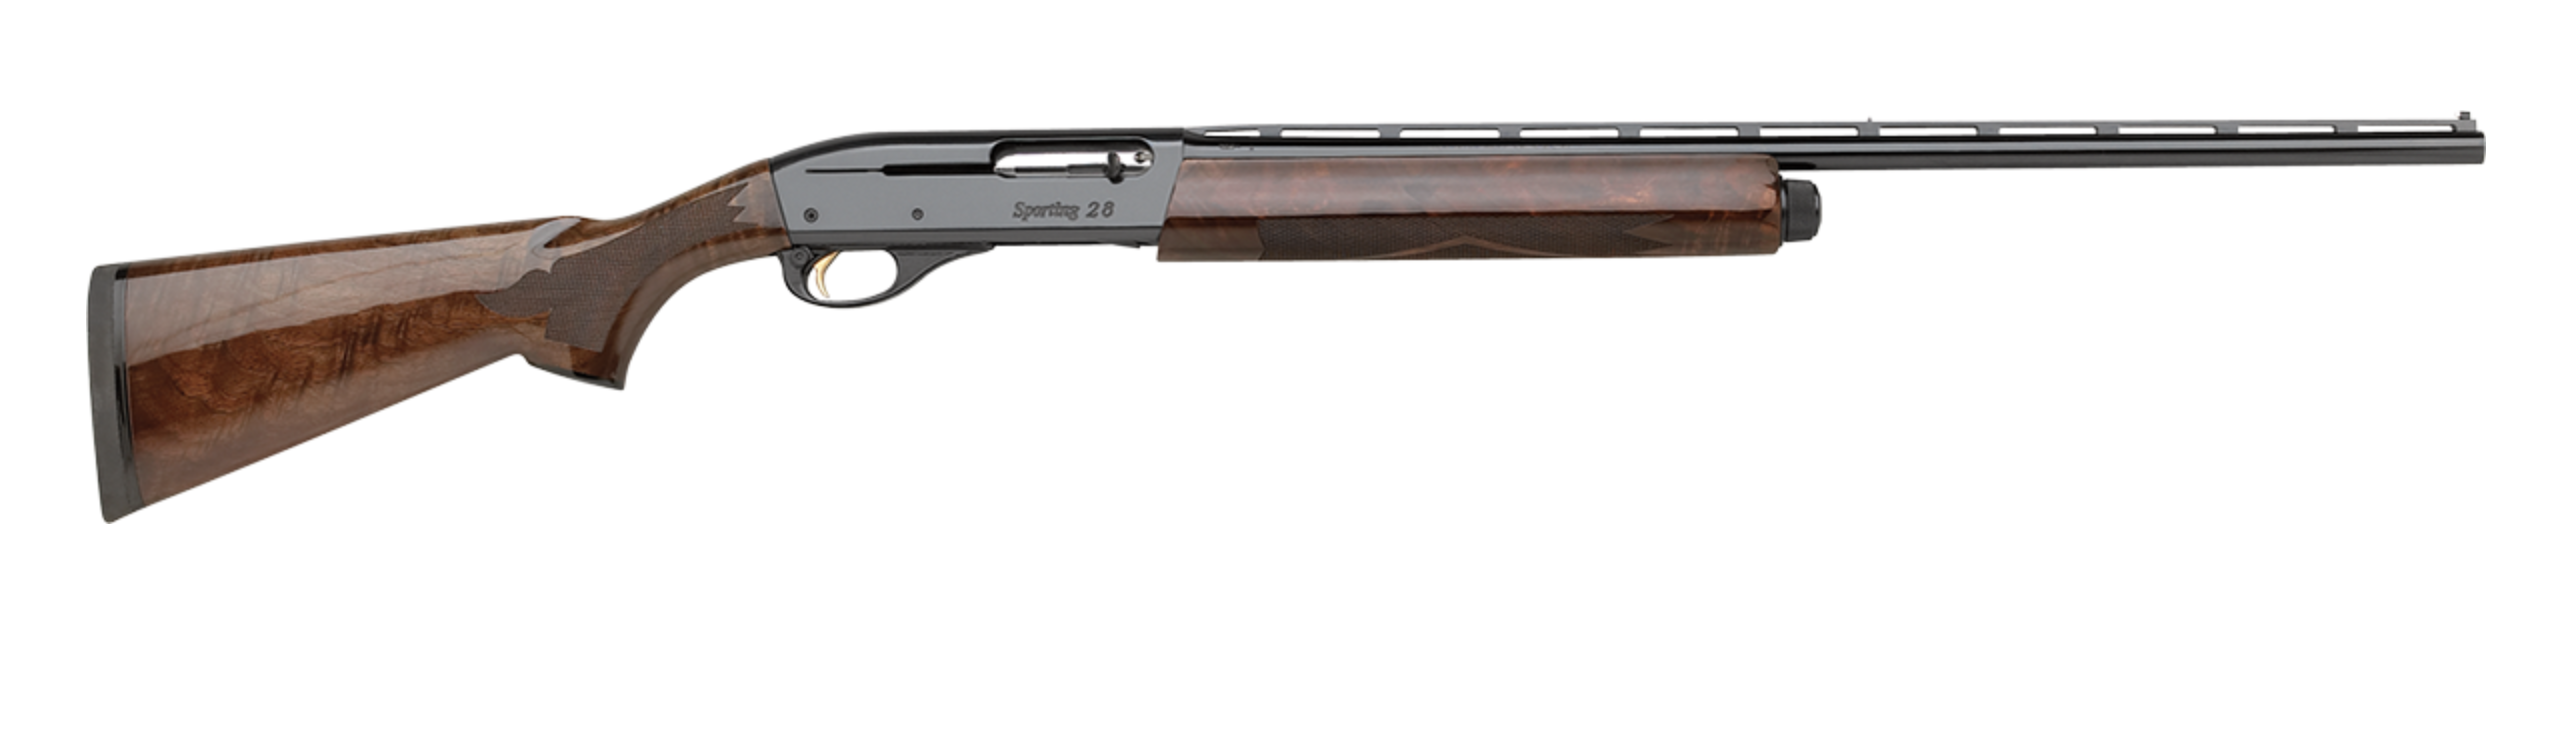 Wood-stocked semi-auto remington  model 1100 wingmaster shotgun on a white background